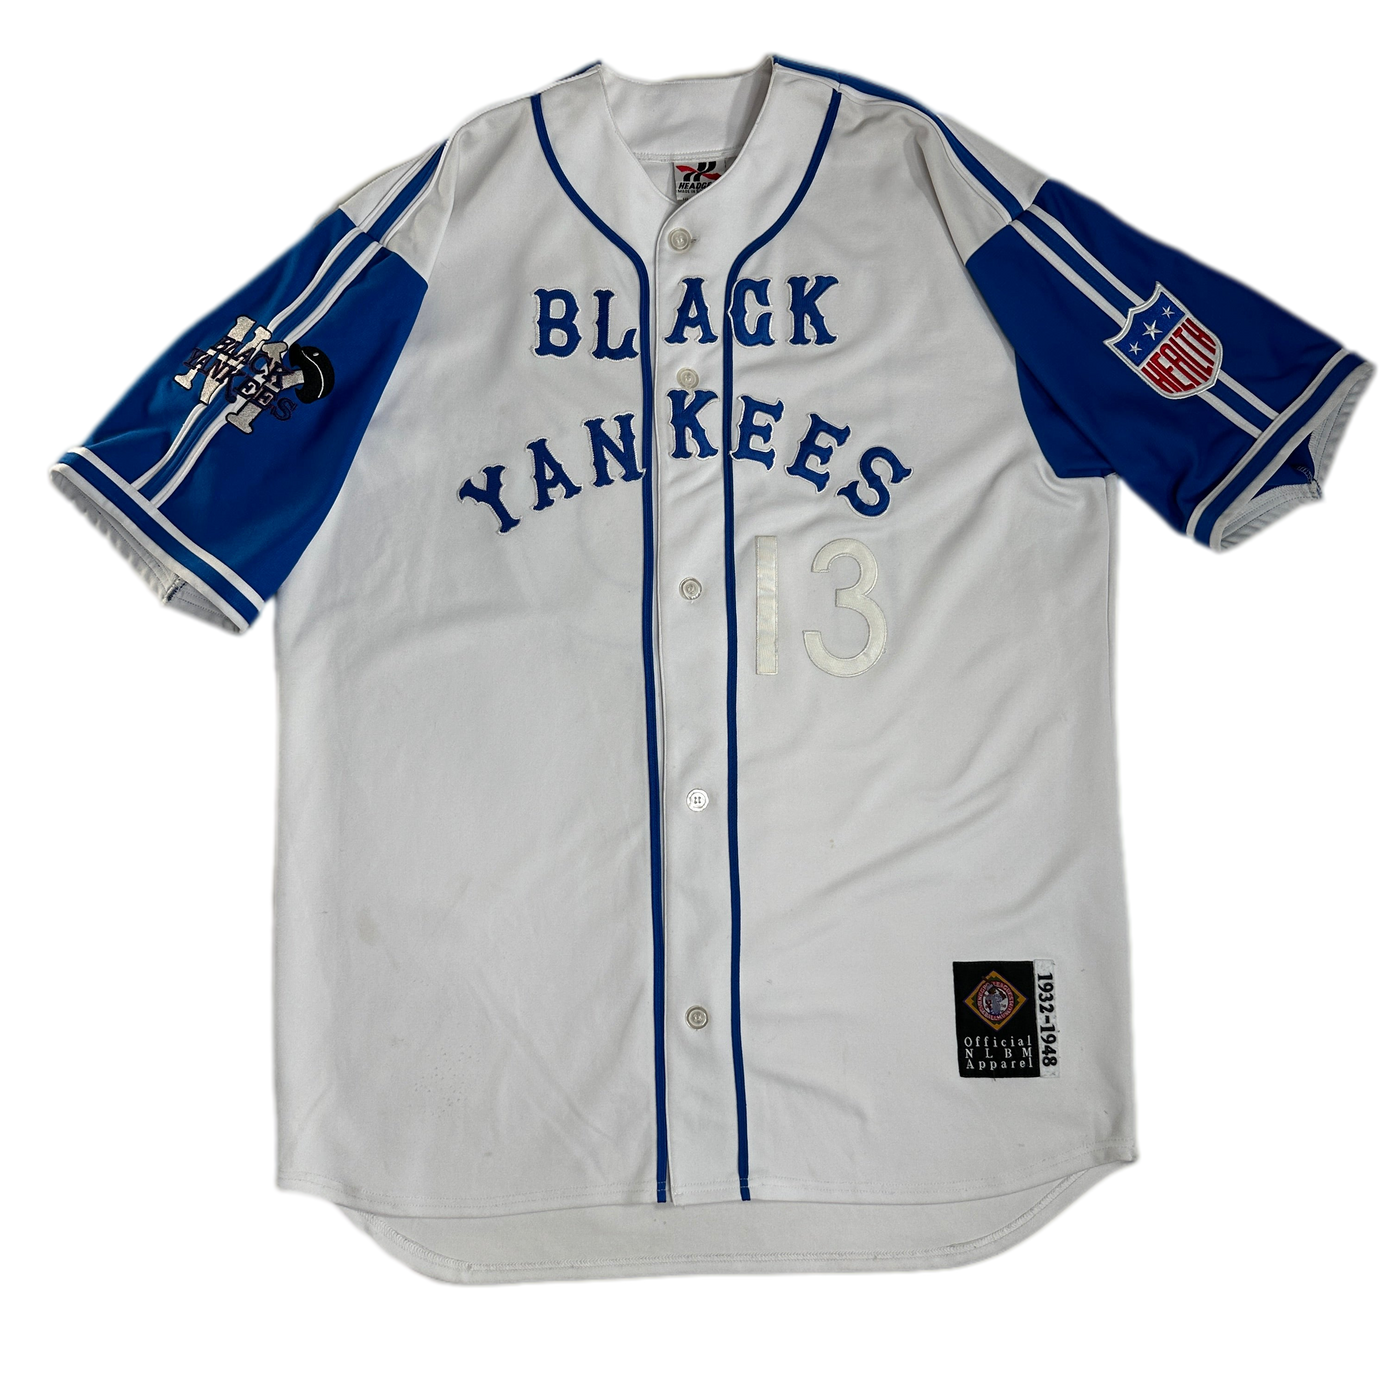 1948 NLBM Black Yankees 13 Sports Jersey sz 2XL